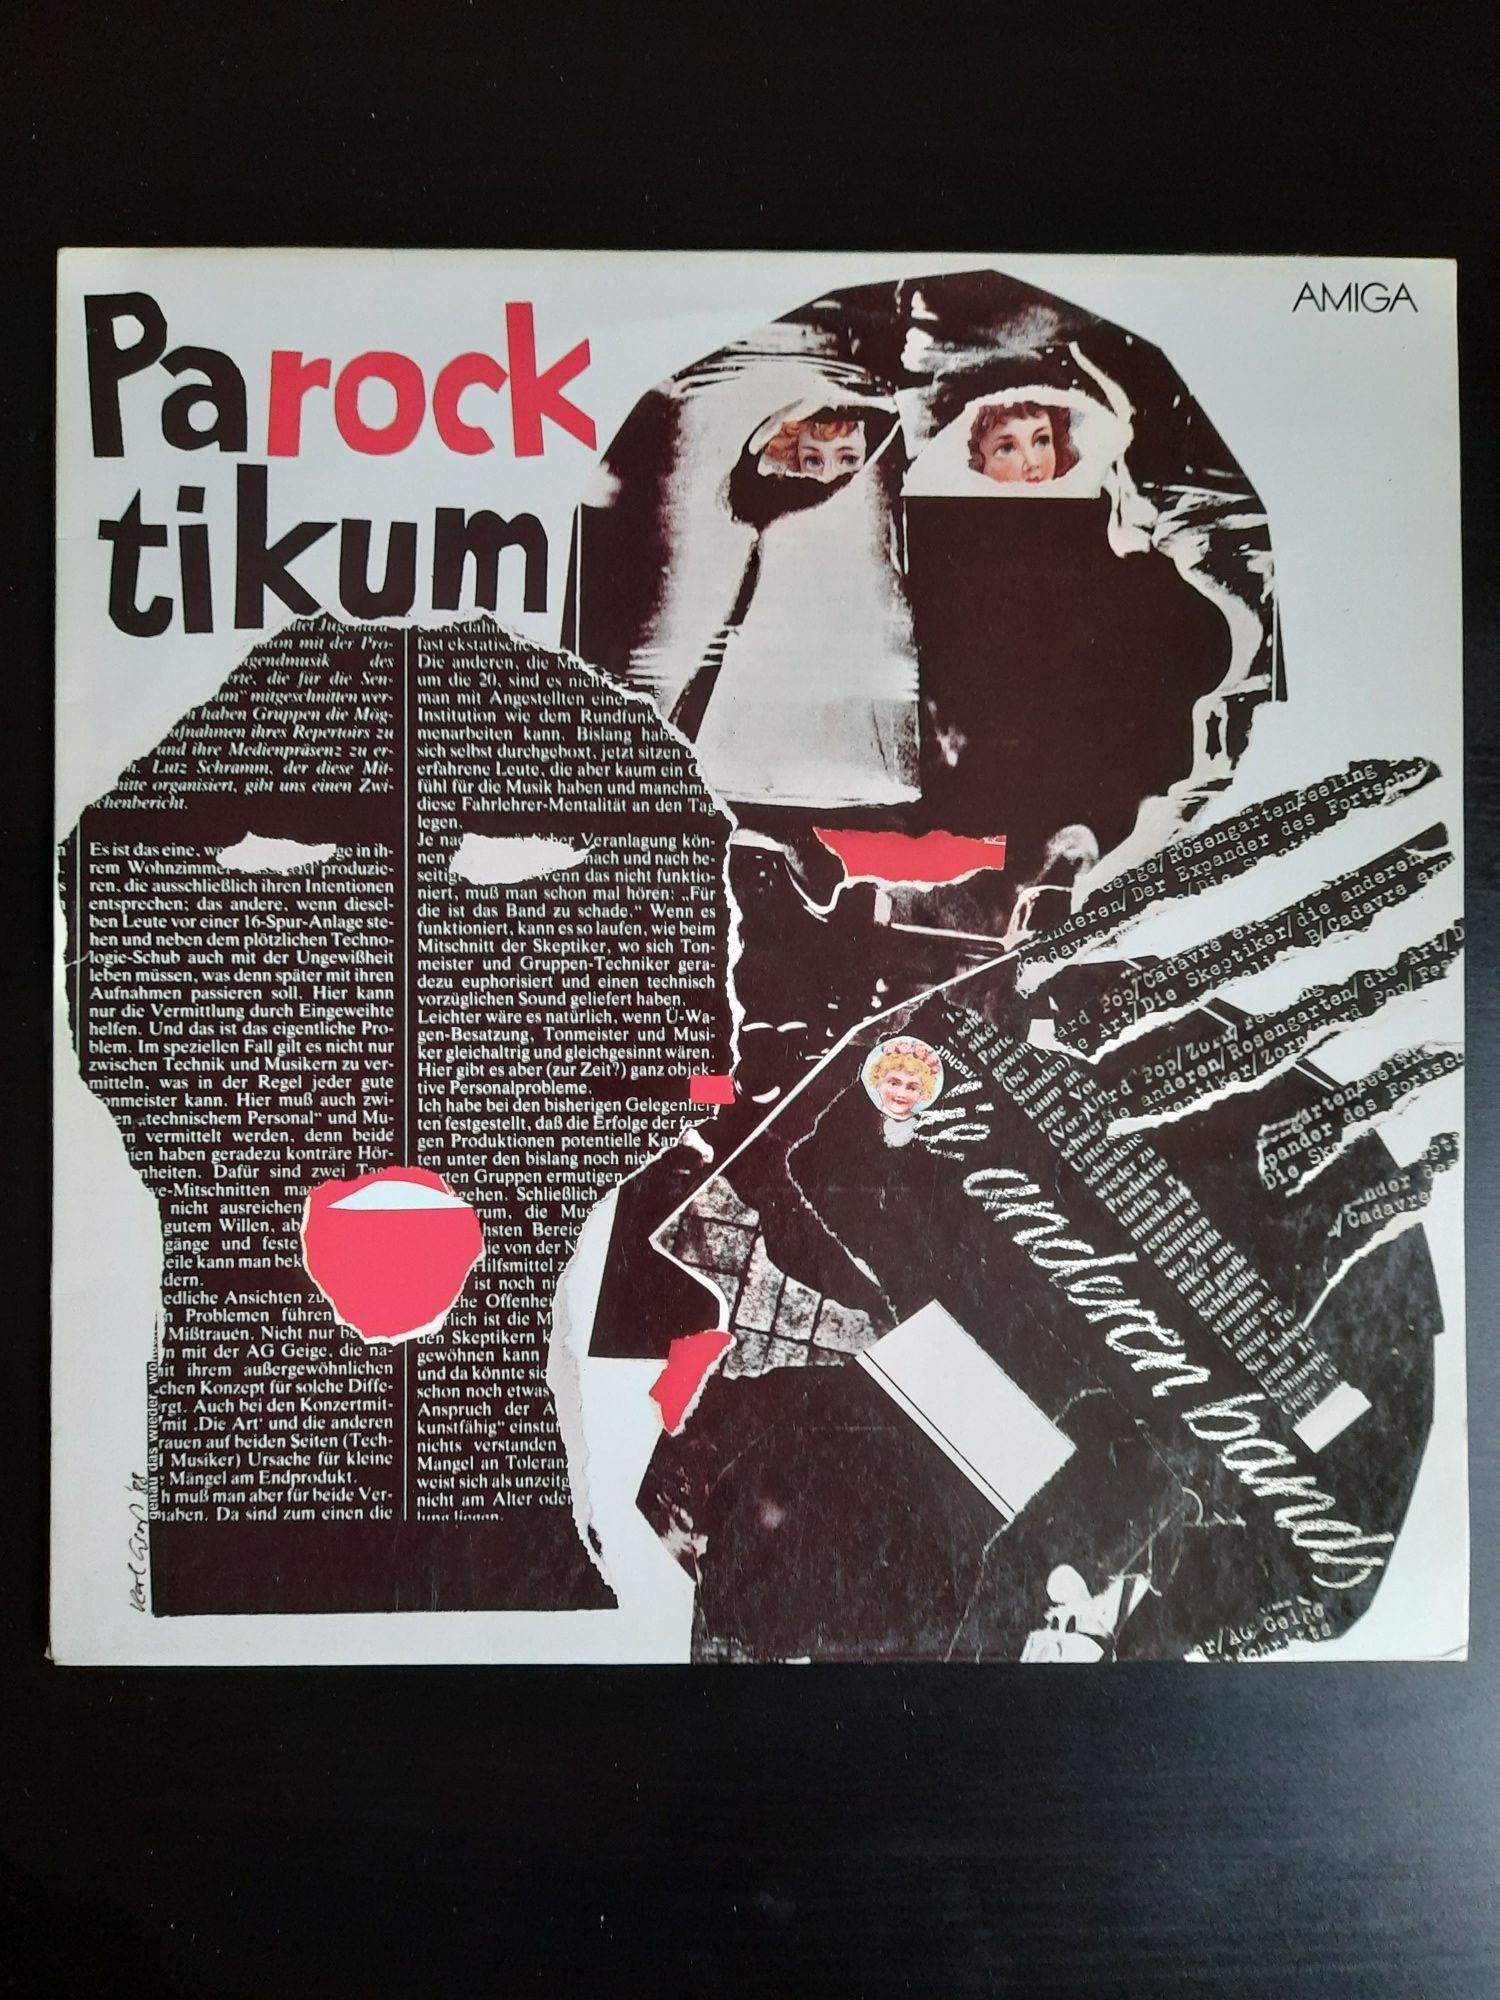 "Parocktikum - Die Anderen Bands" - winyl, składanka rockowa